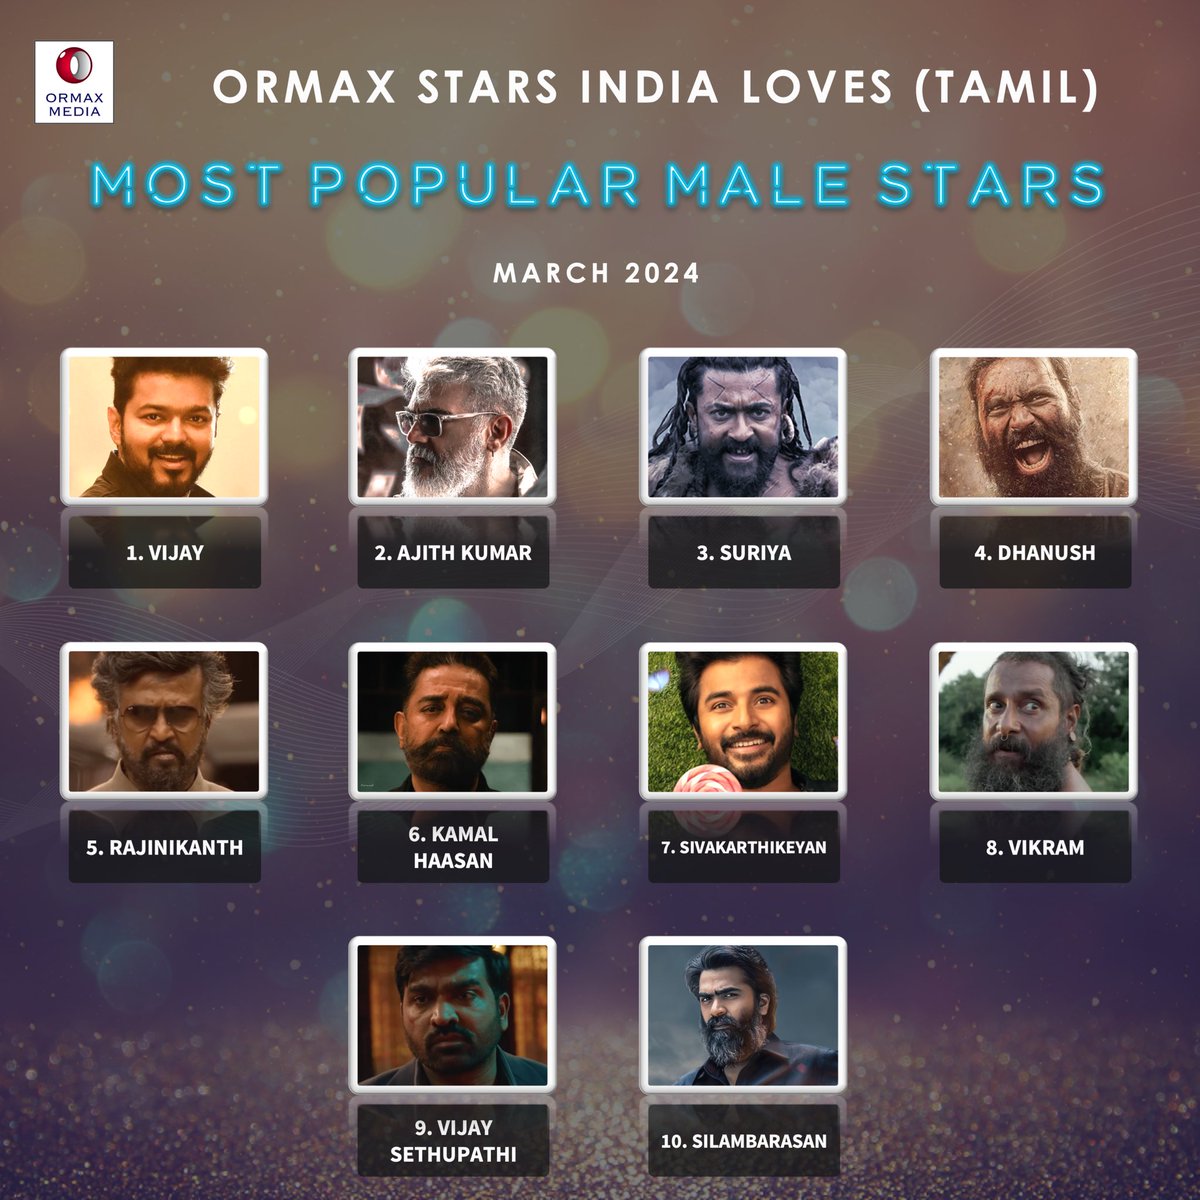 Ormax Stars India Loves: Most popular male Tamil film stars (Mar 2024)